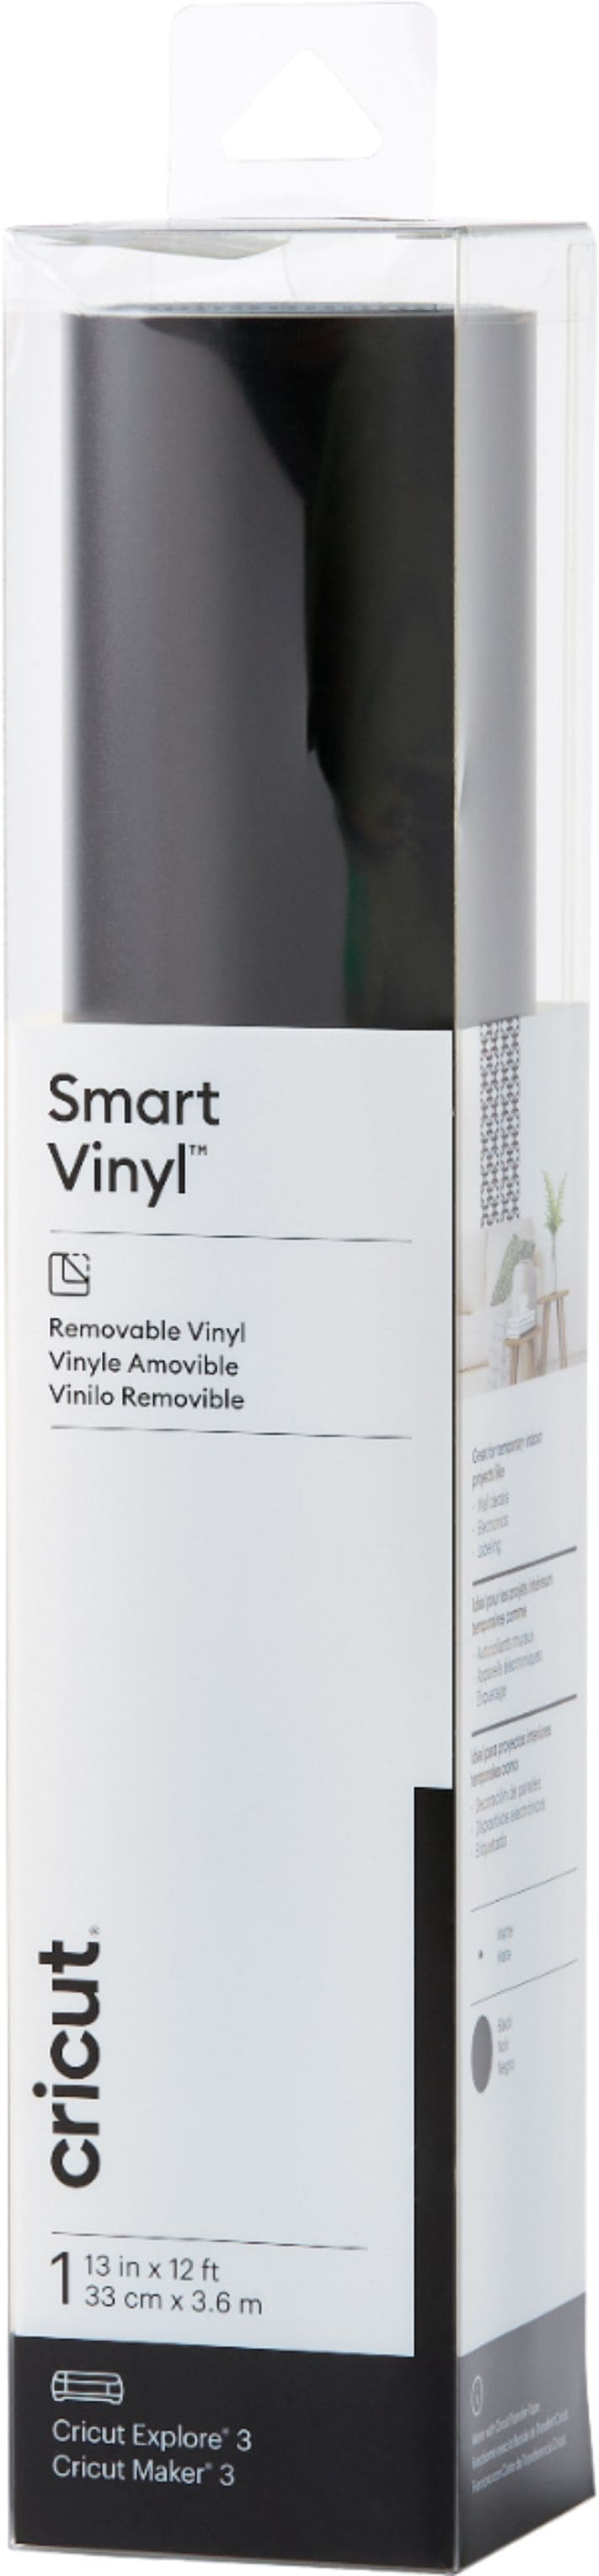 Cricut - Smart Vinyl – Removable 12 ft - Black_0